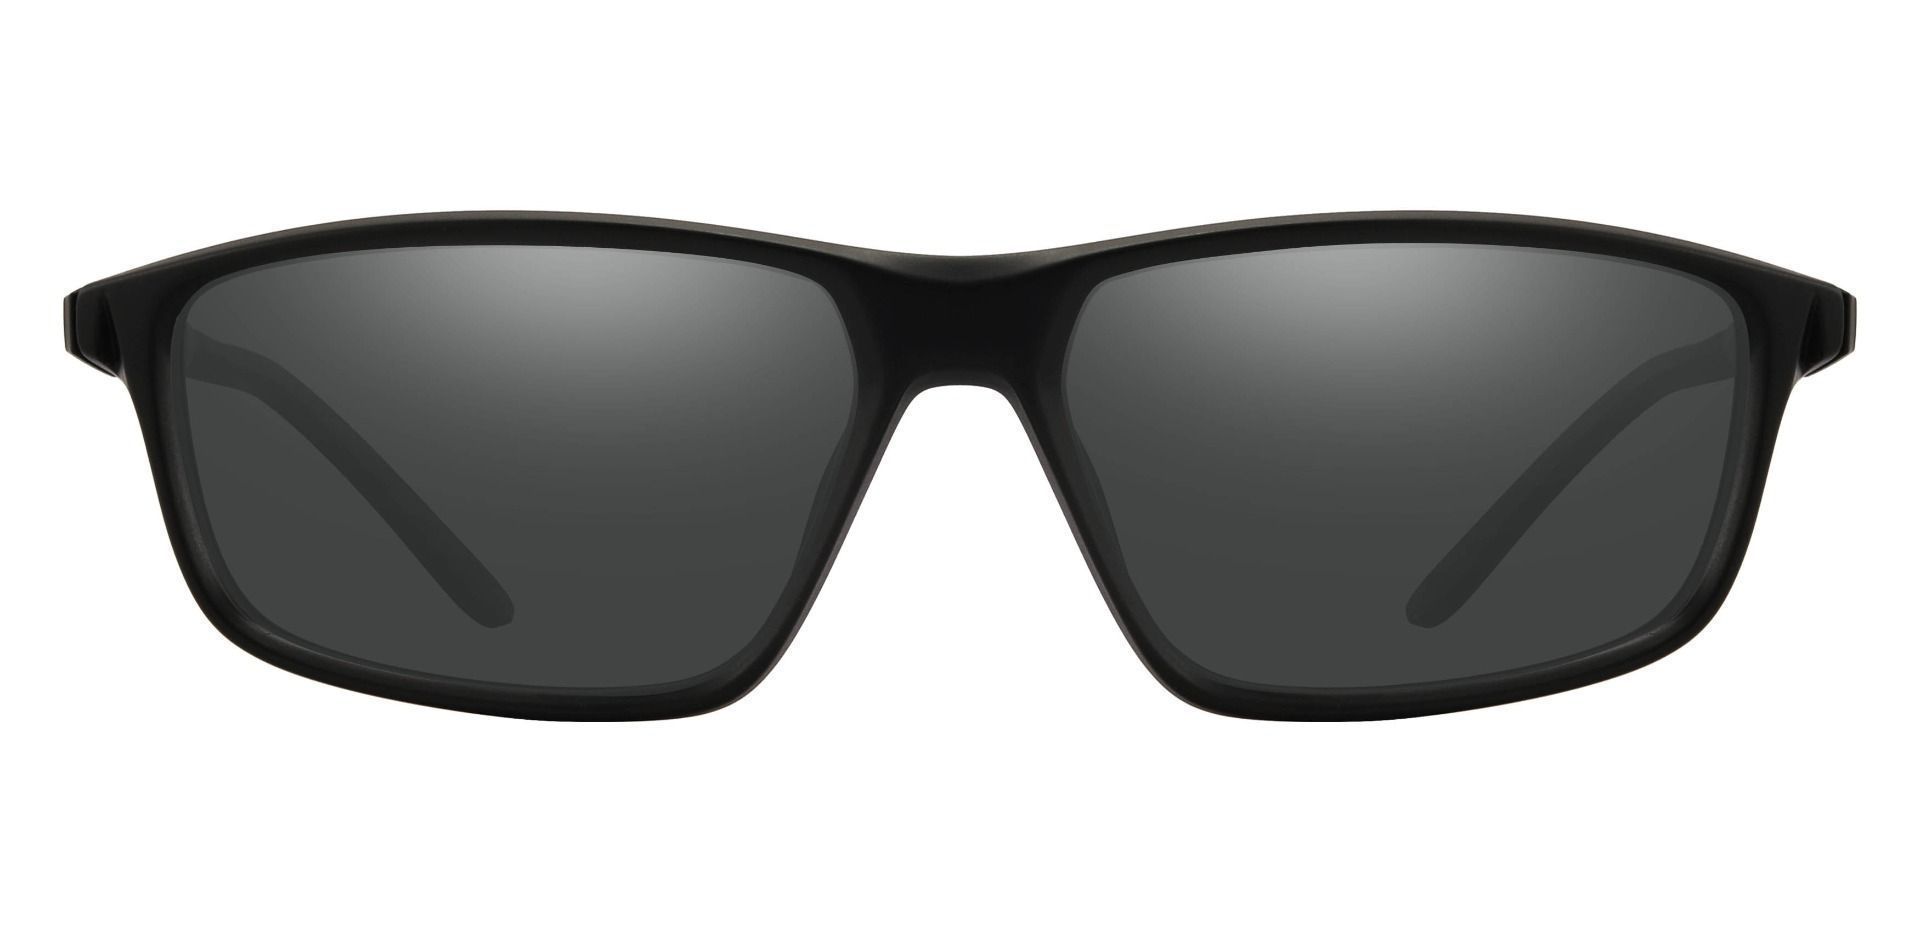 Mark Rectangle Progressive Sunglasses - Black Frame With Gray Lenses ...